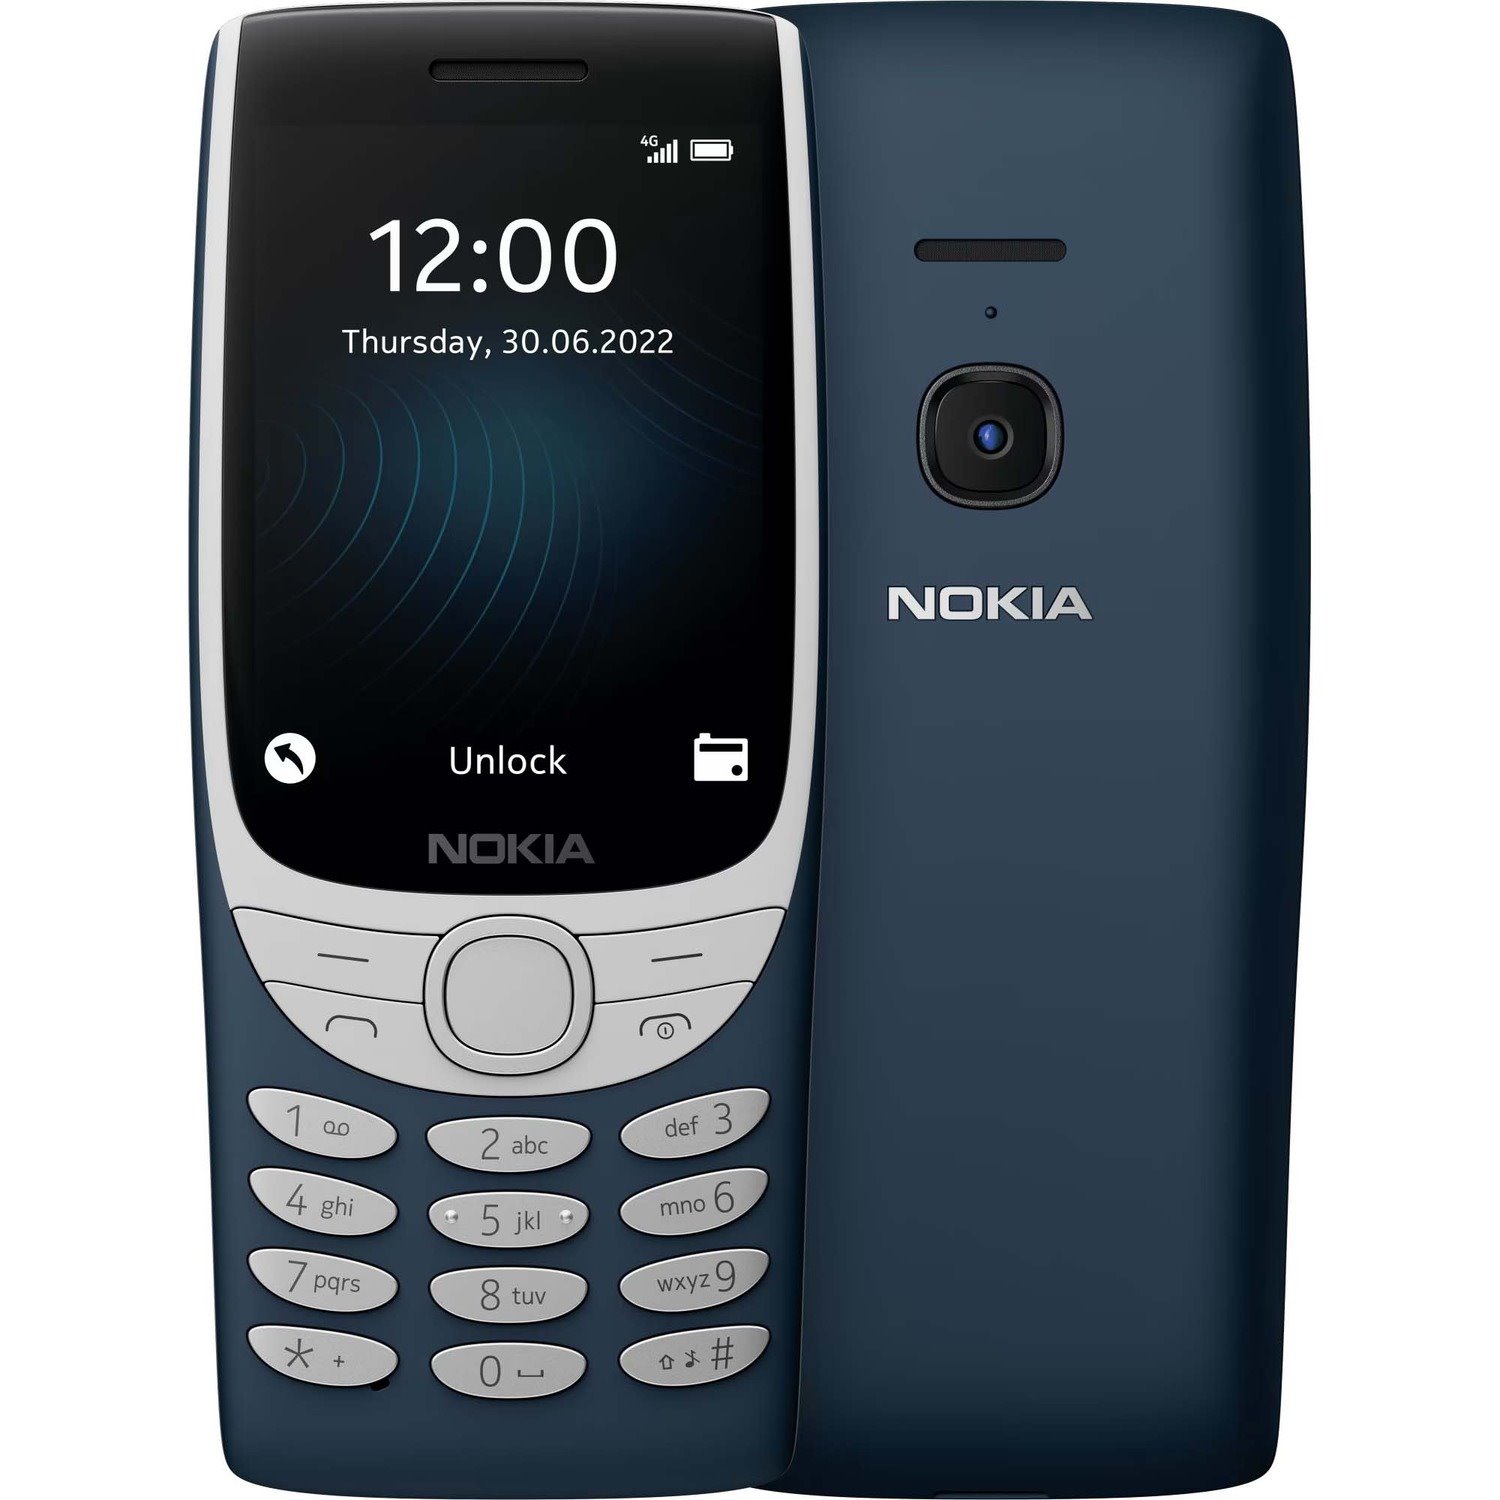 Nokia 8210 4G 128 MB Feature Phone - 2.8" TFT LCD QVGA 240 x 320 - Cortex A71 GHz - 48 MB RAM - Series 30+ - 4G - Dark Blue